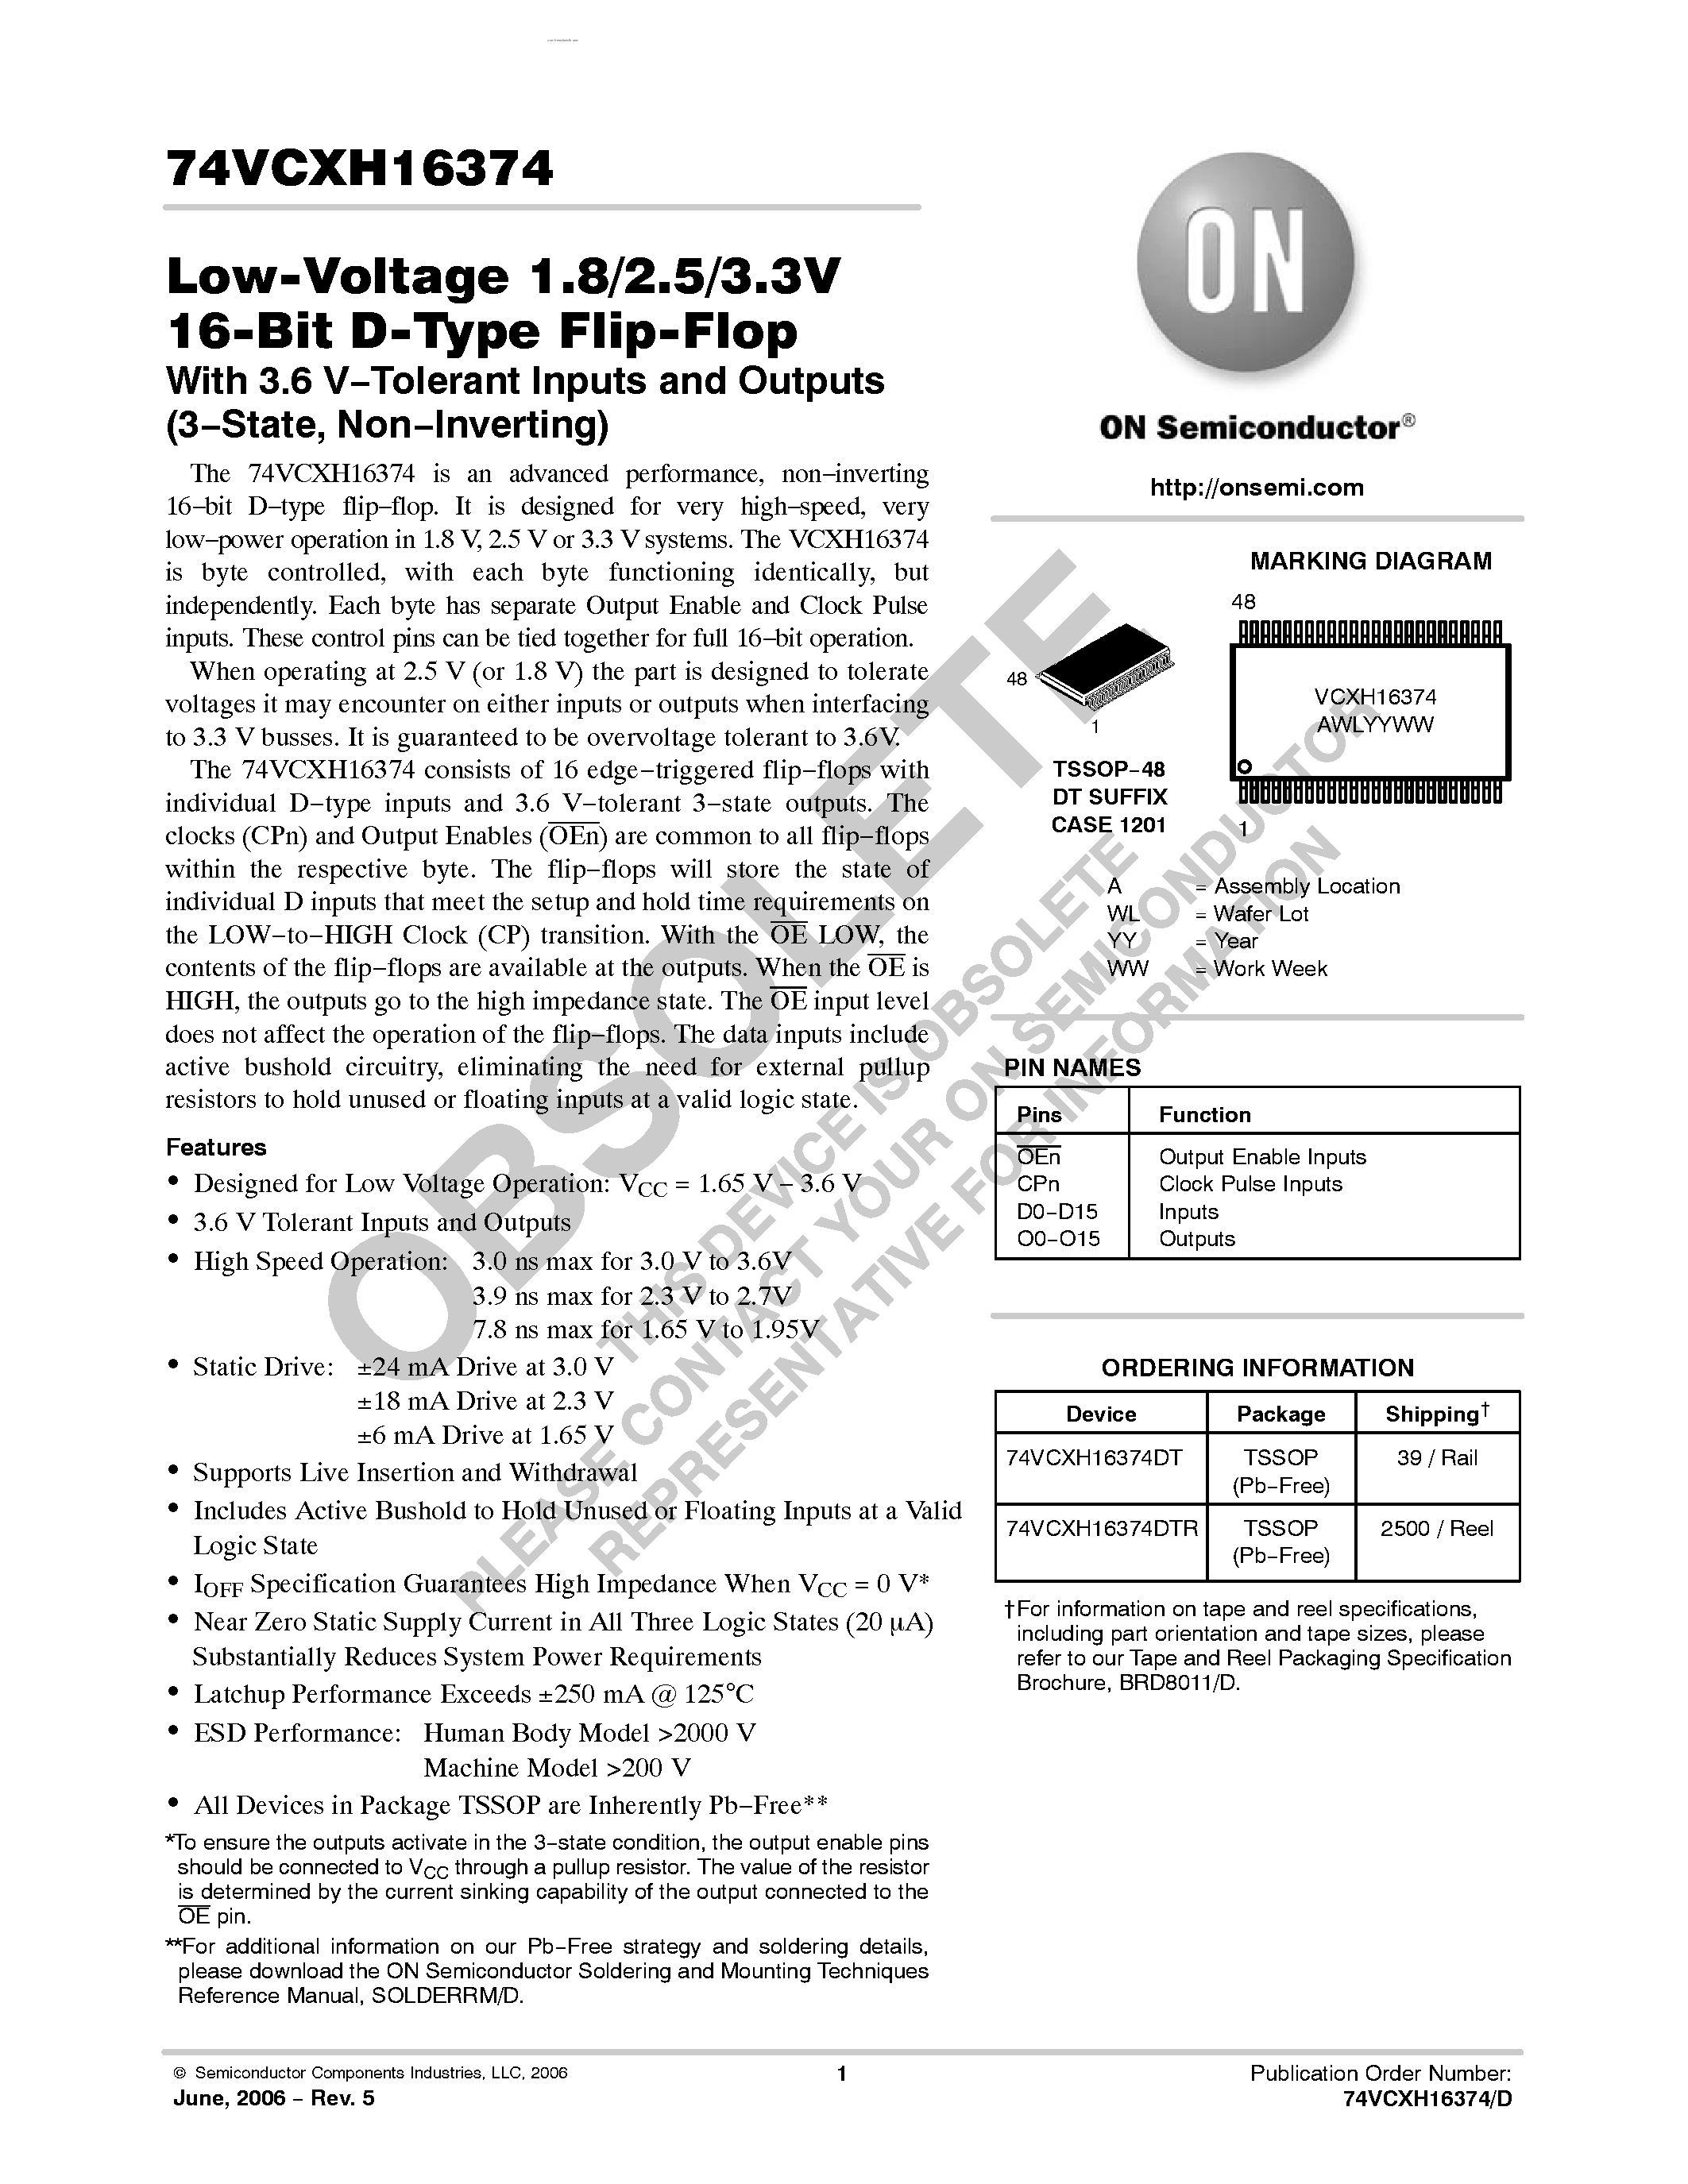 Datasheet 74VCXH16374 - Low-Voltage 1.8/2.5/3.3V 16-Bit D-Type Flip-Flop page 1